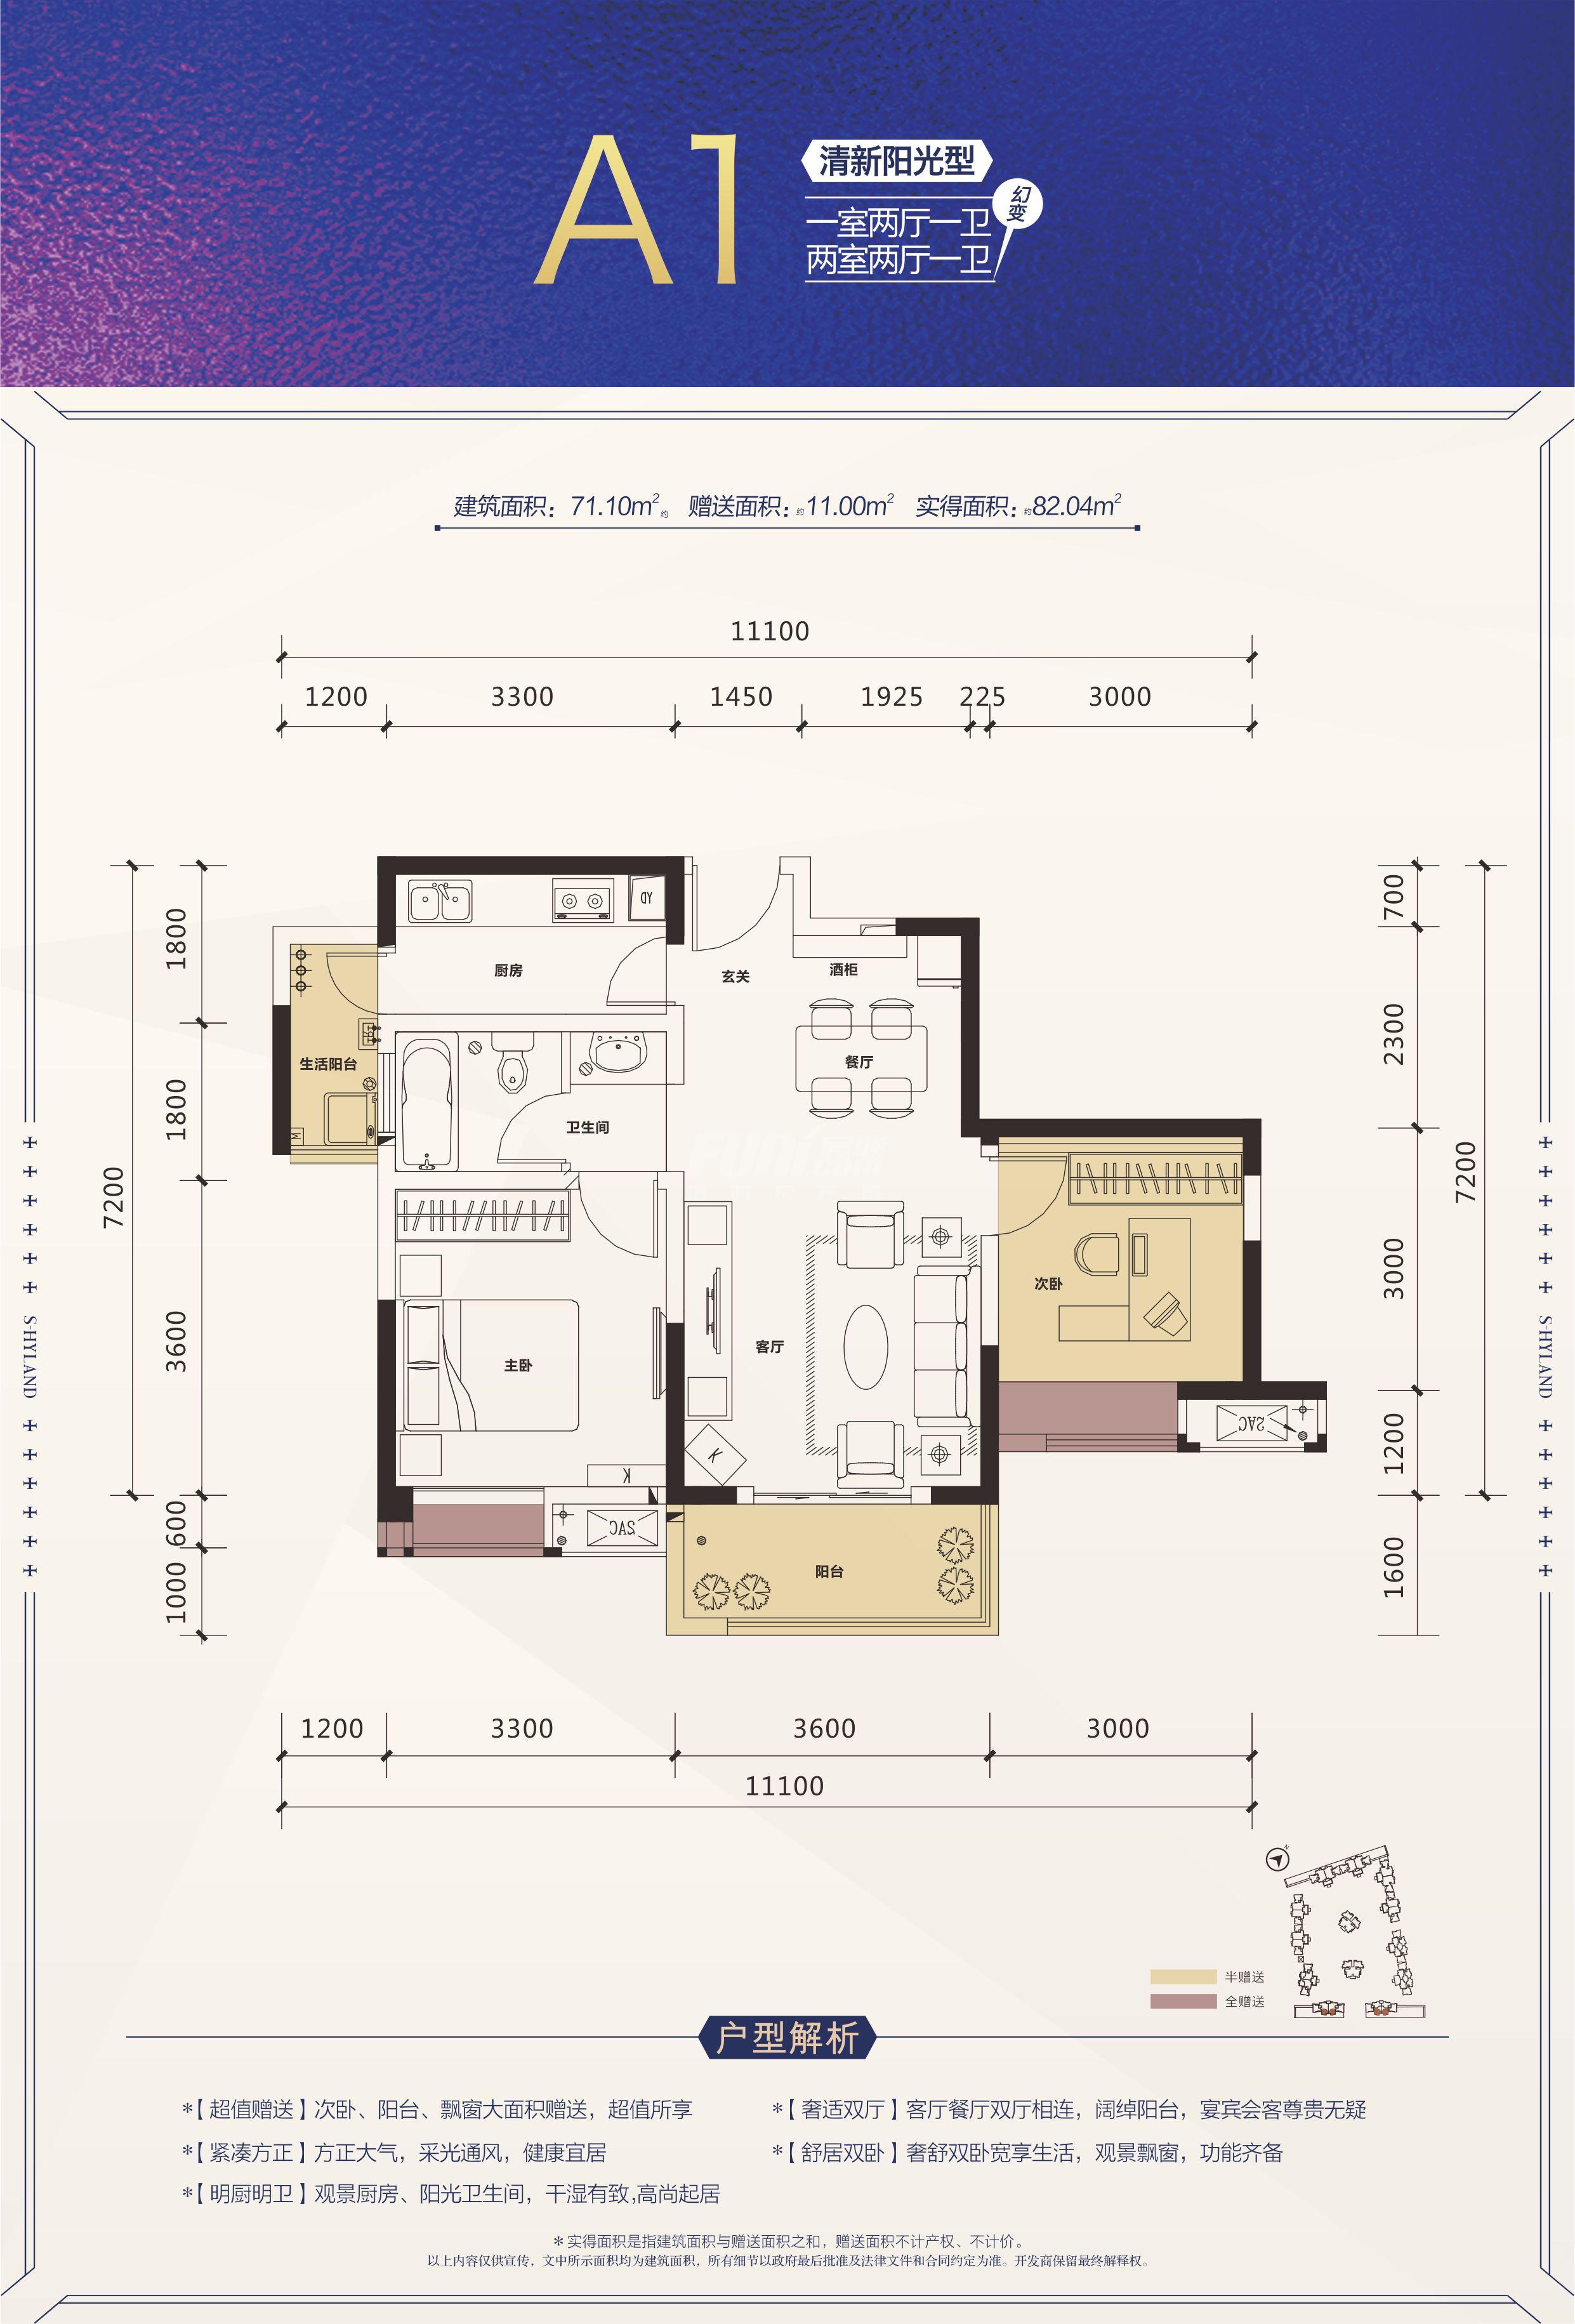 圣桦城a1户型图,2室2厅1卫71.10平米- 成都房产网